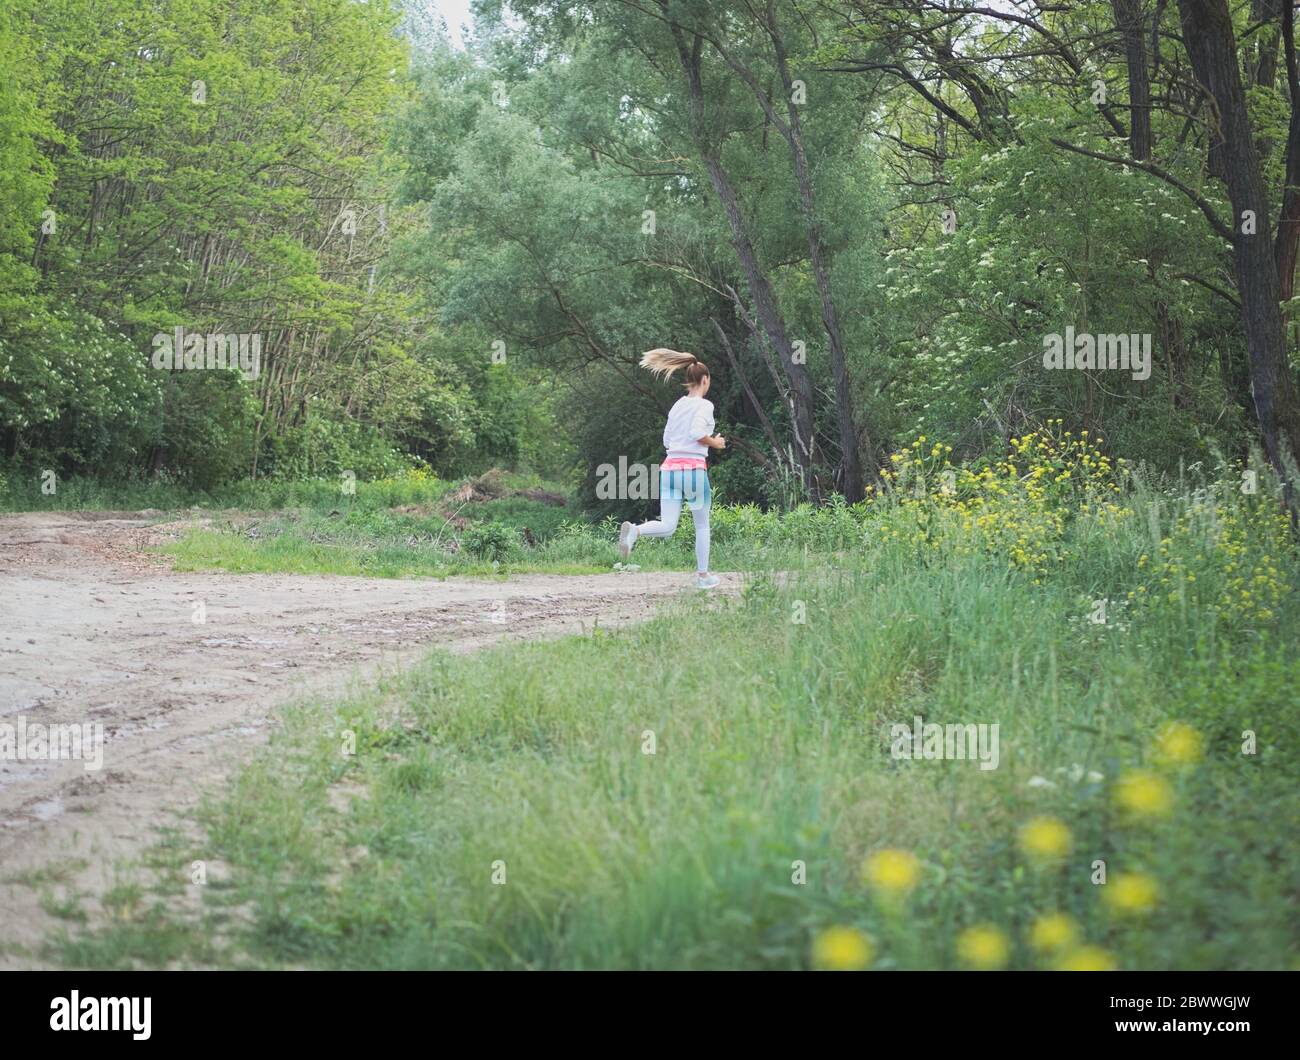 Junge Blonde kaukasische Frau läuft im Wald auf einem Dirt Road Stockfoto